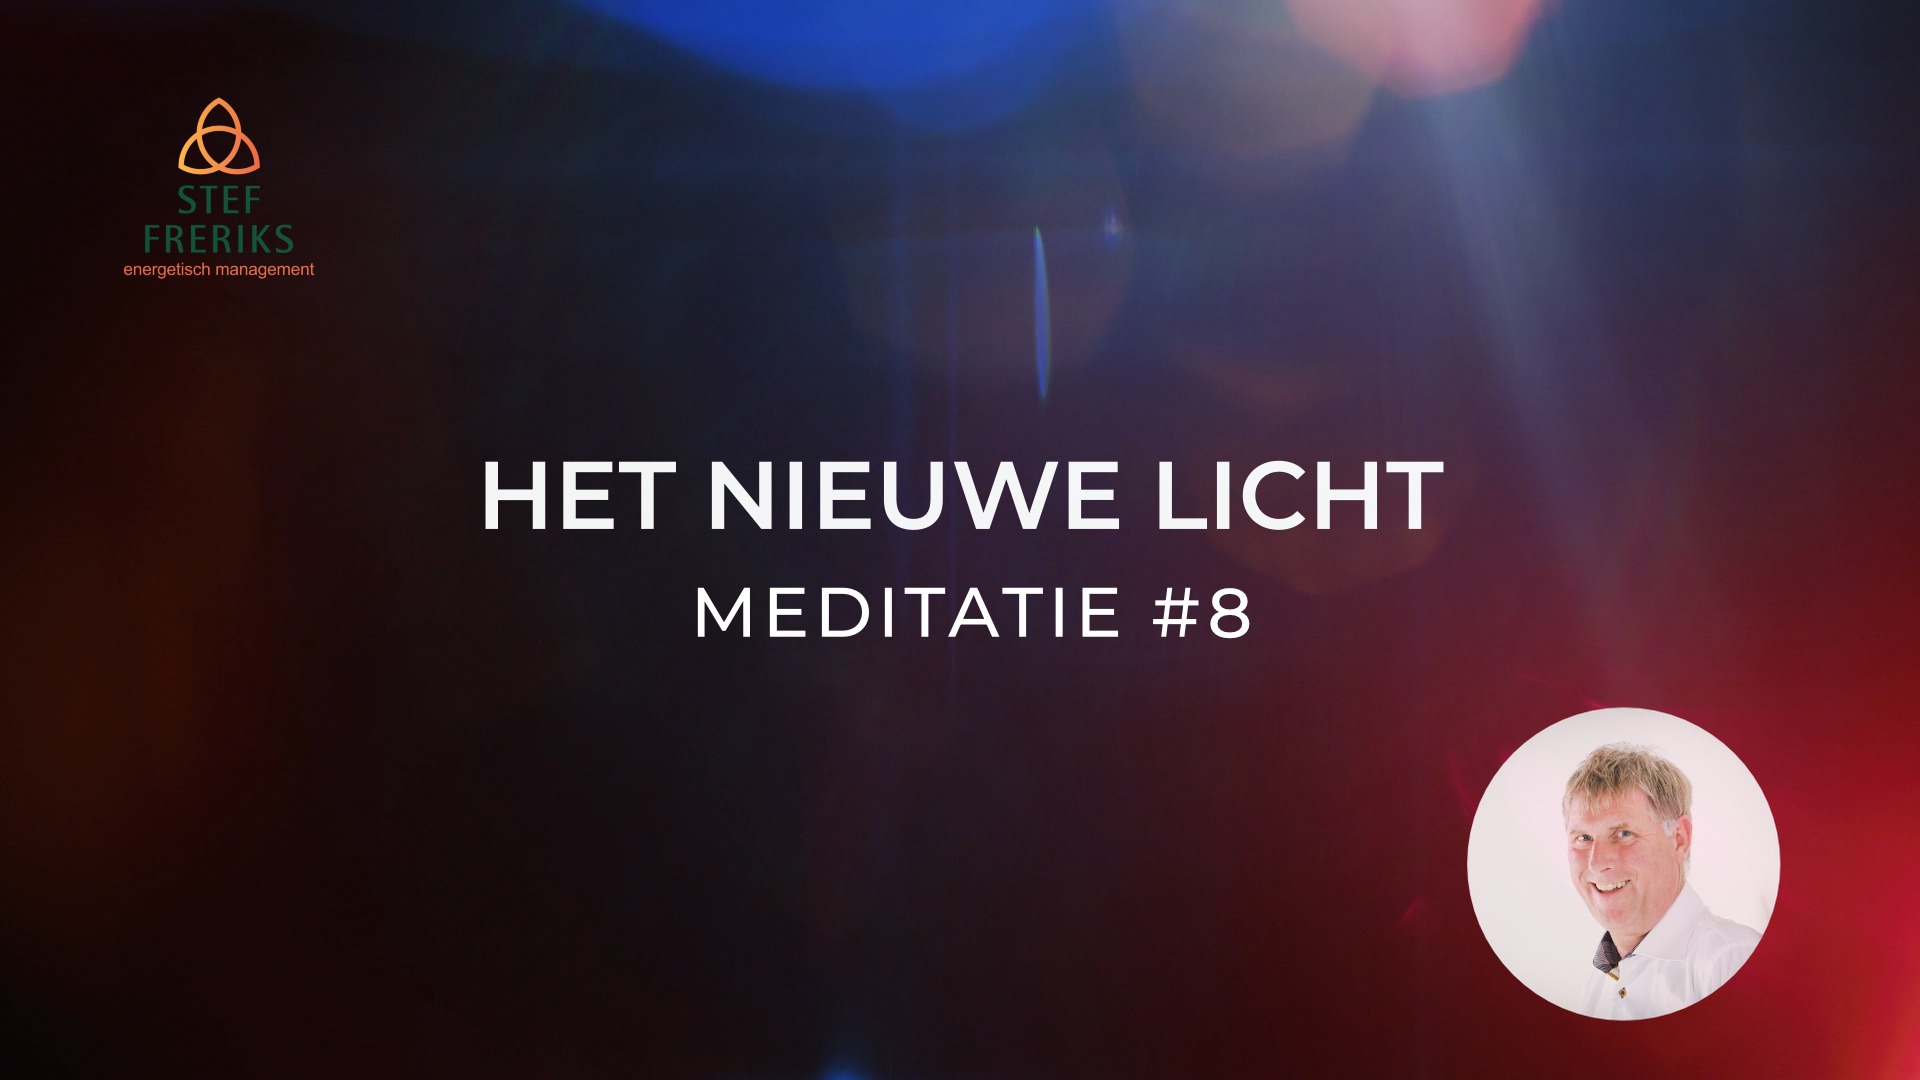 Meditatie #8 uit de serie Het Nieuwe Licht: Waardering voor de Omgeving